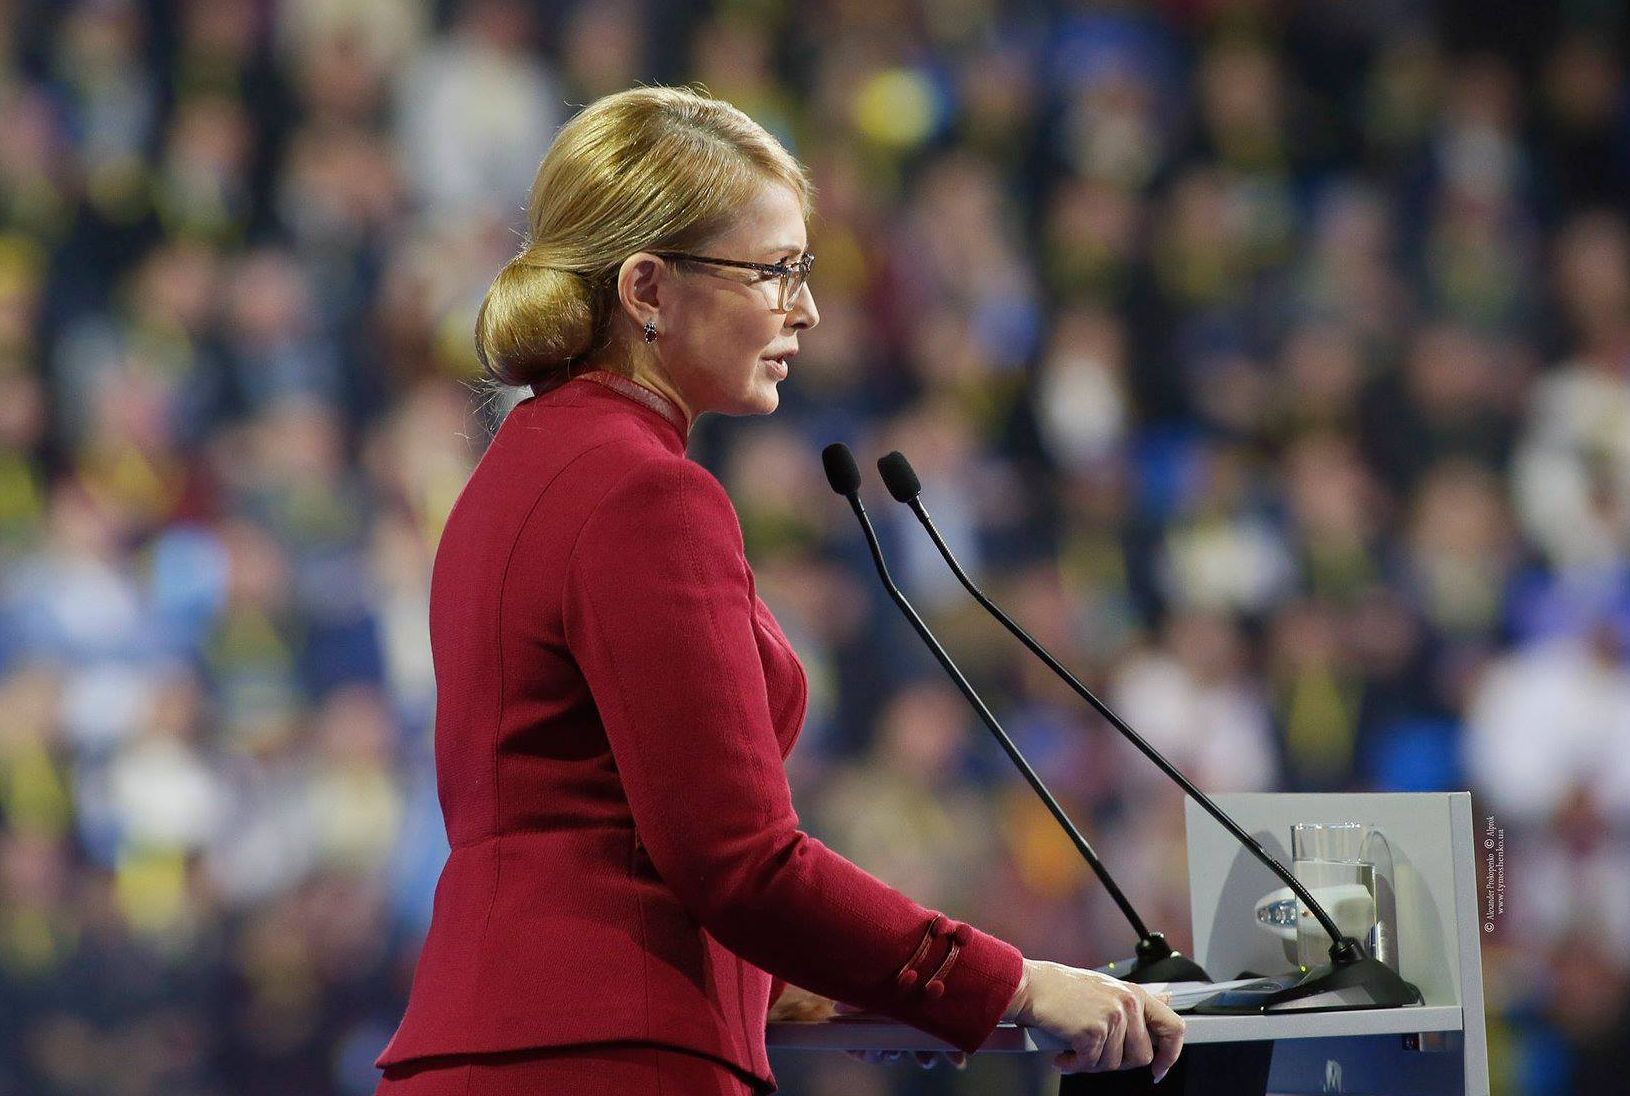 Тимошенко: Порошенко собирается выплатить 6 млн украинцев по тысяче гривен за голос